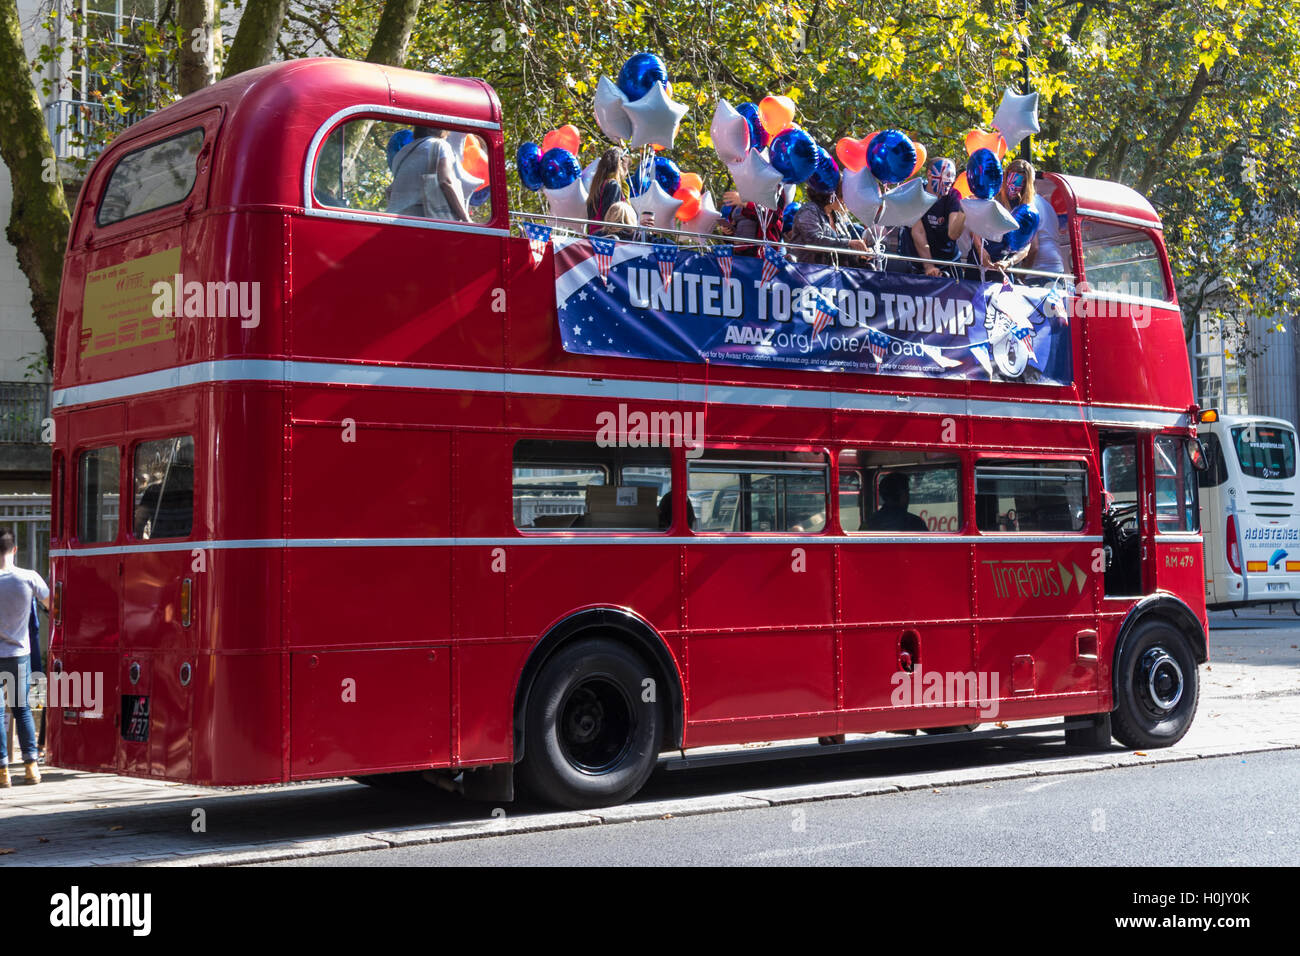 Londra, 21 settembre 2016. Un 'Stop Trump' aprire sormontato red London double-decker bus tours nel centro di Londra in una offerta di incoraggiarci gli espatriati di votare per Clinton. XXXX. Credito: Paolo Davey/Alamy Live News Foto Stock